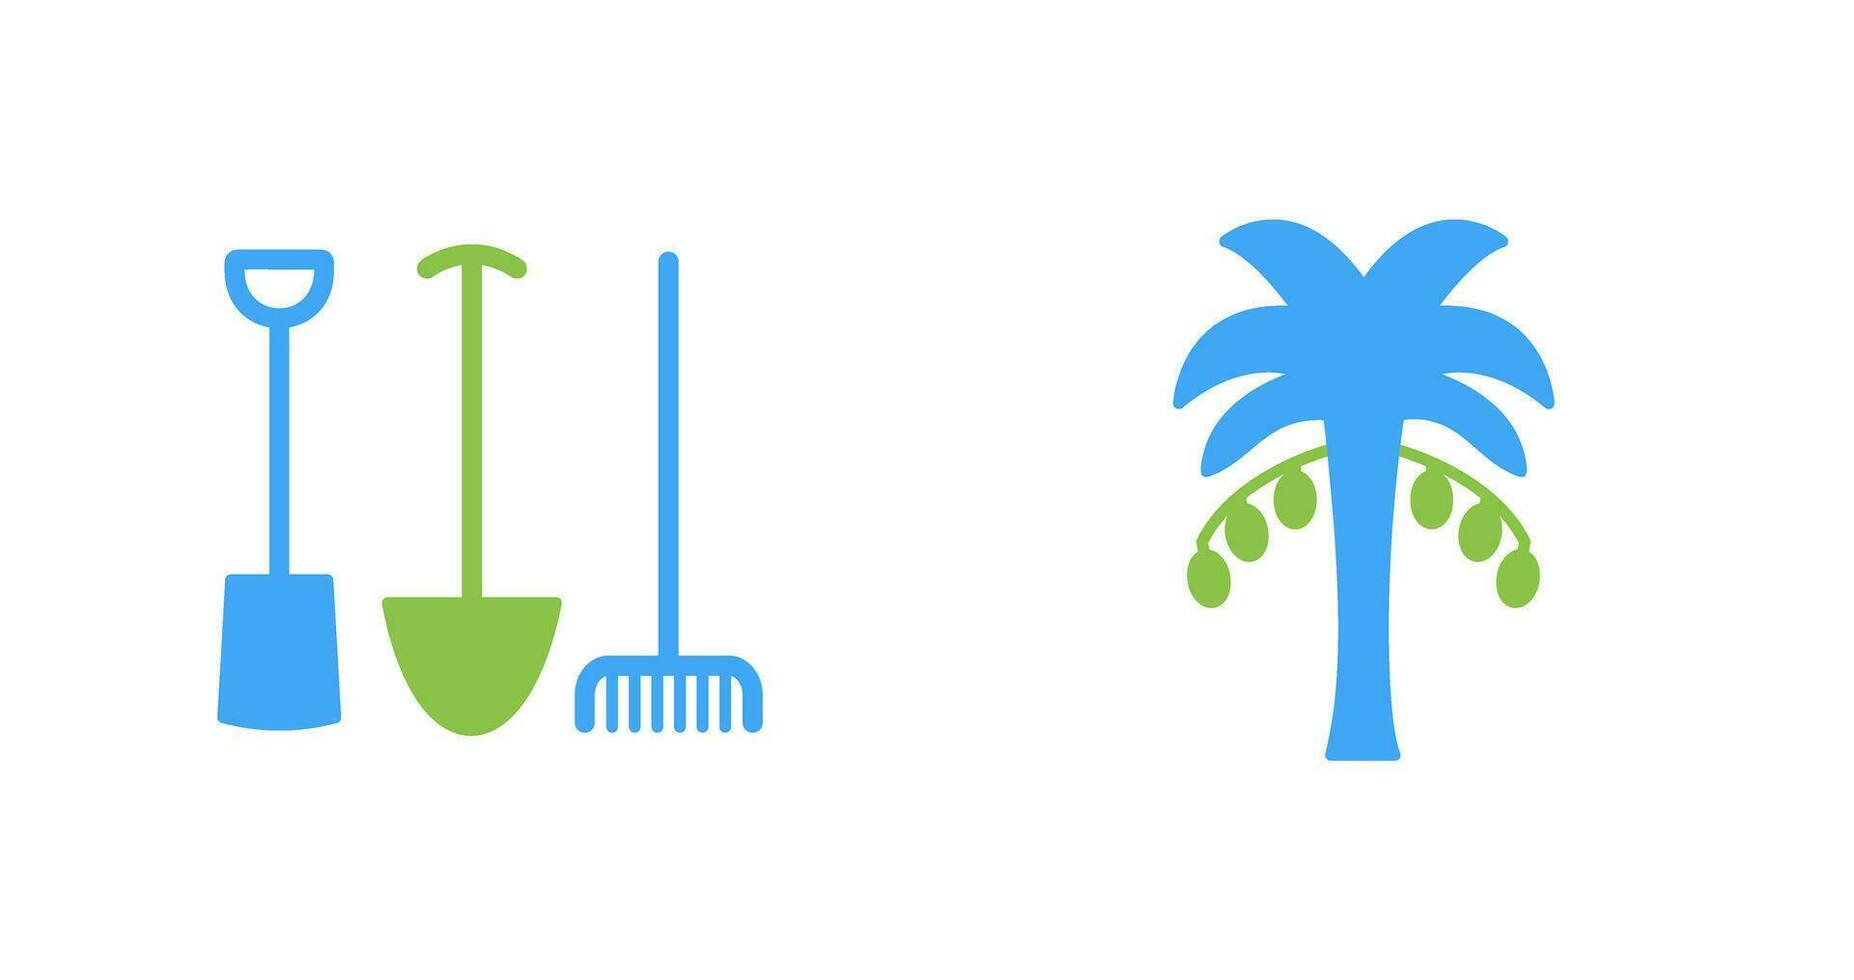 Gartenarbeit Werkzeuge und Palme Baum Symbol vektor